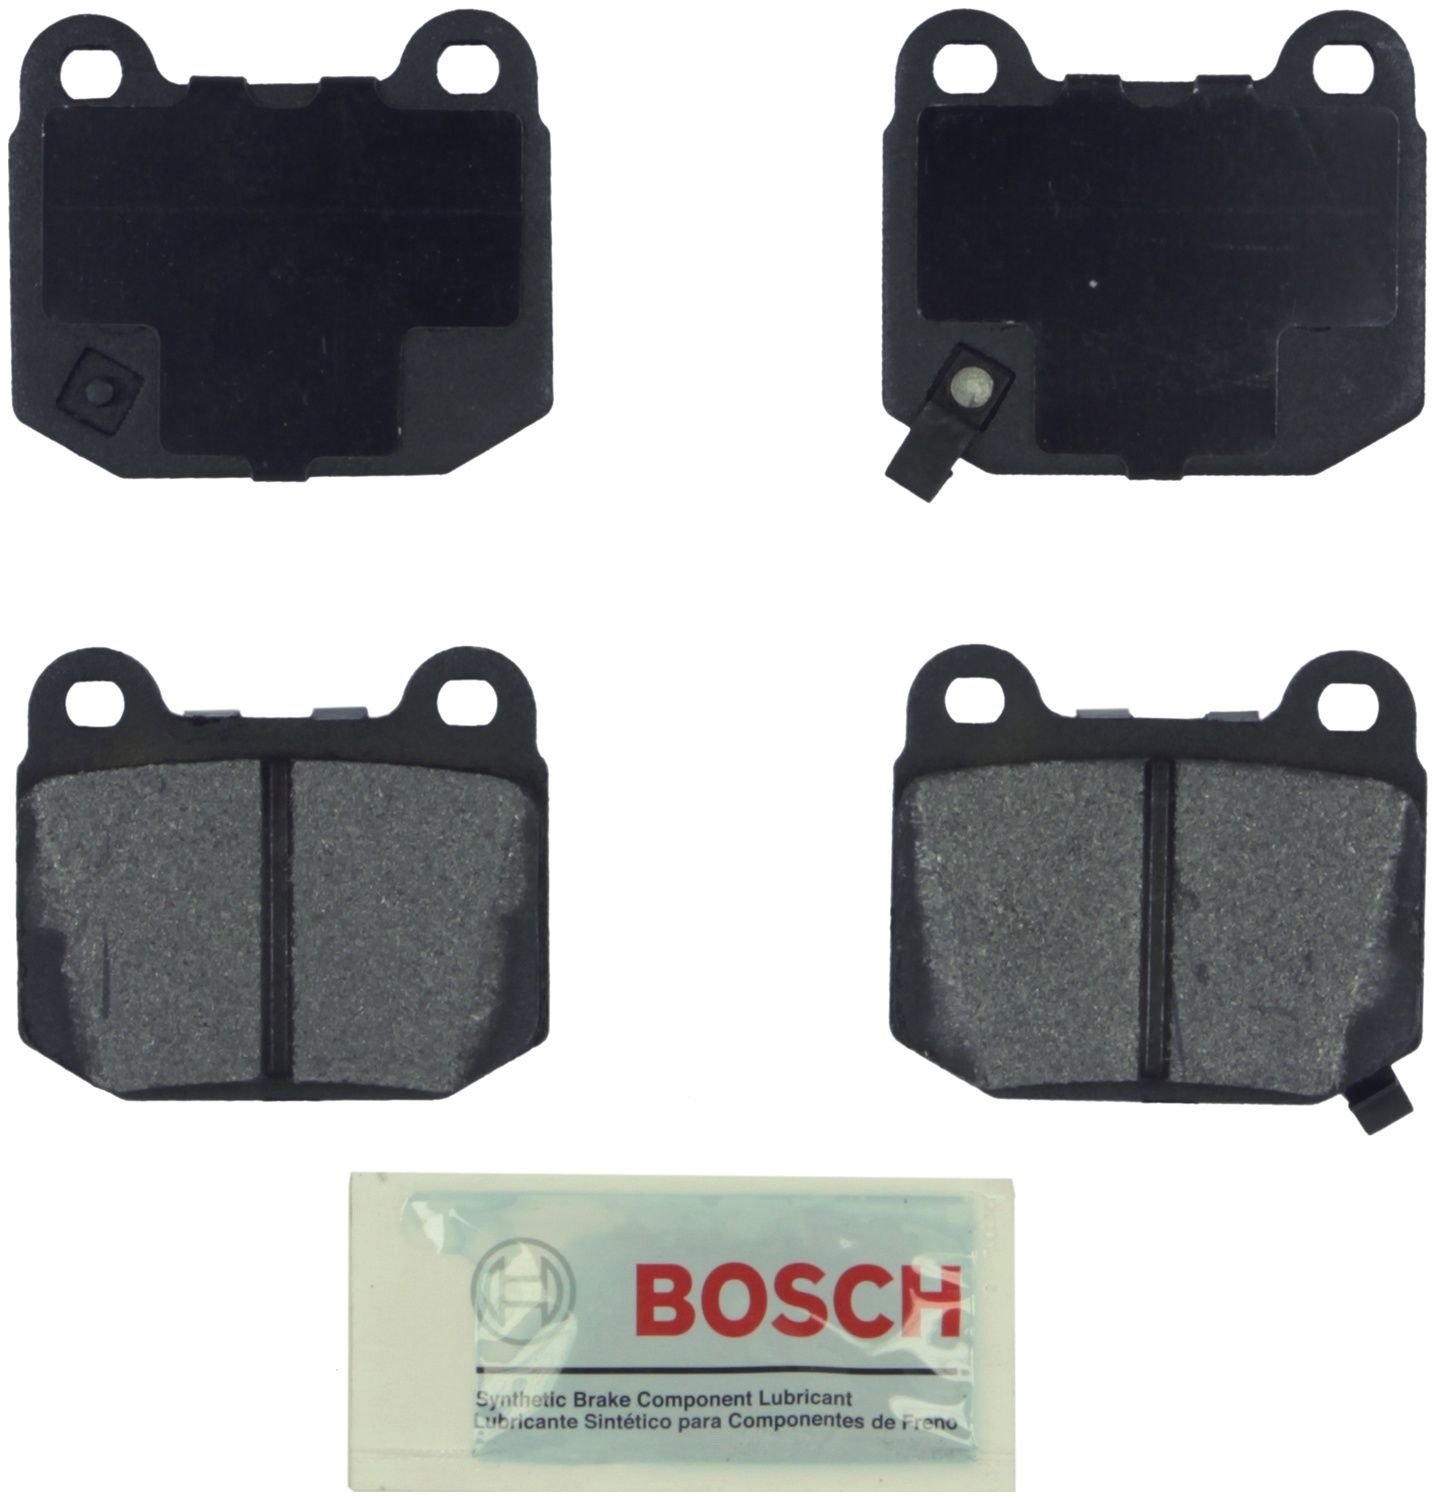 BOSCH BRAKE - Bosch Blue Semi-Metallic Brake Pads (Rear) - BQC BE961